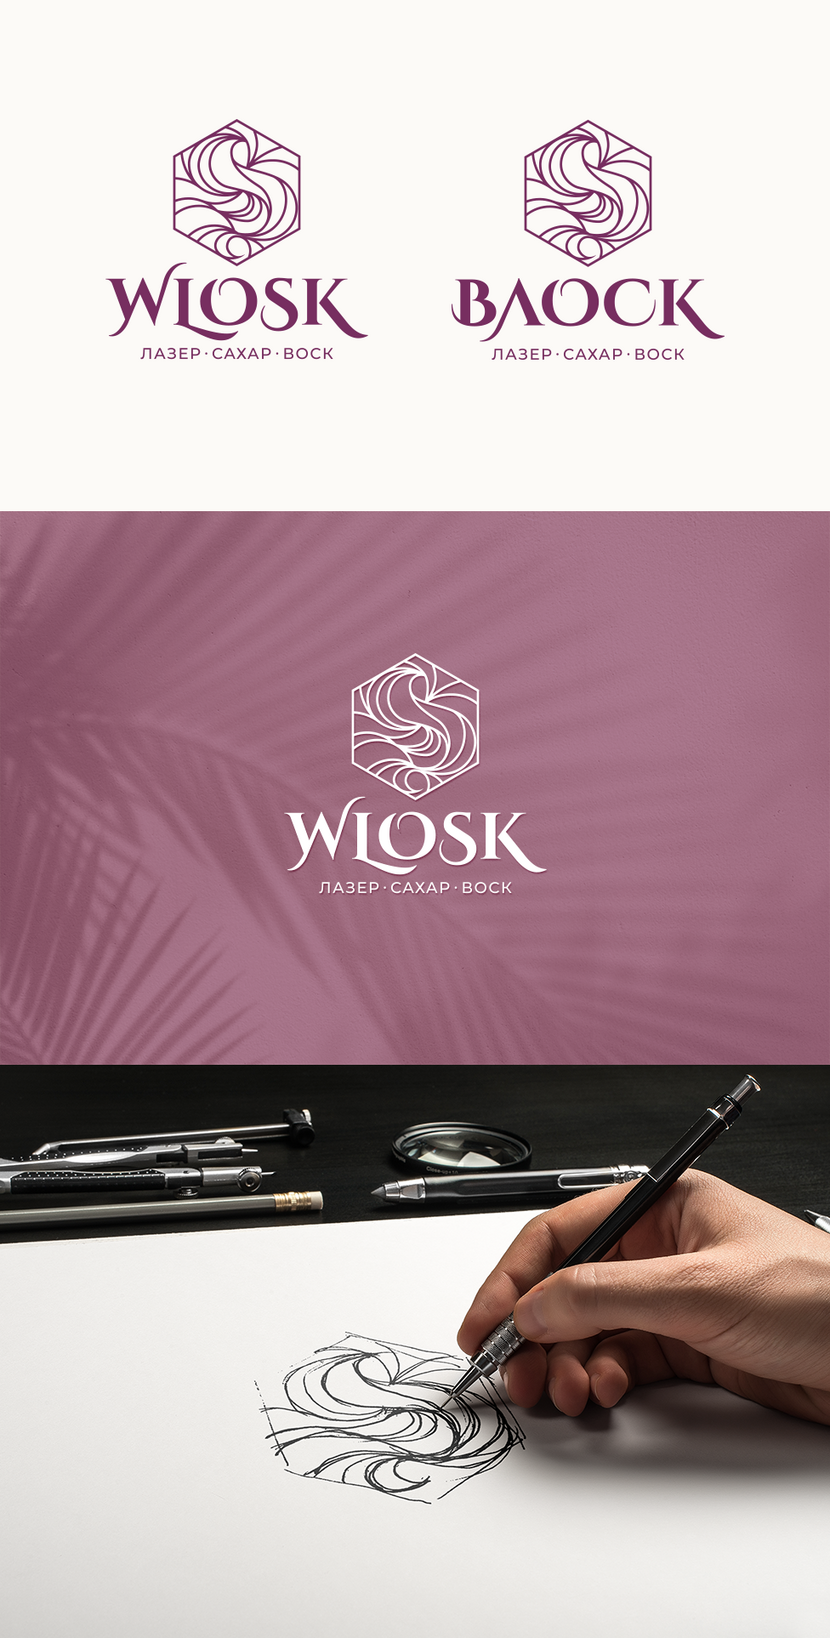 Комплекс логотипов для WLOSK - сети медицинских салонов красоты  -  автор Михаил Заплавский